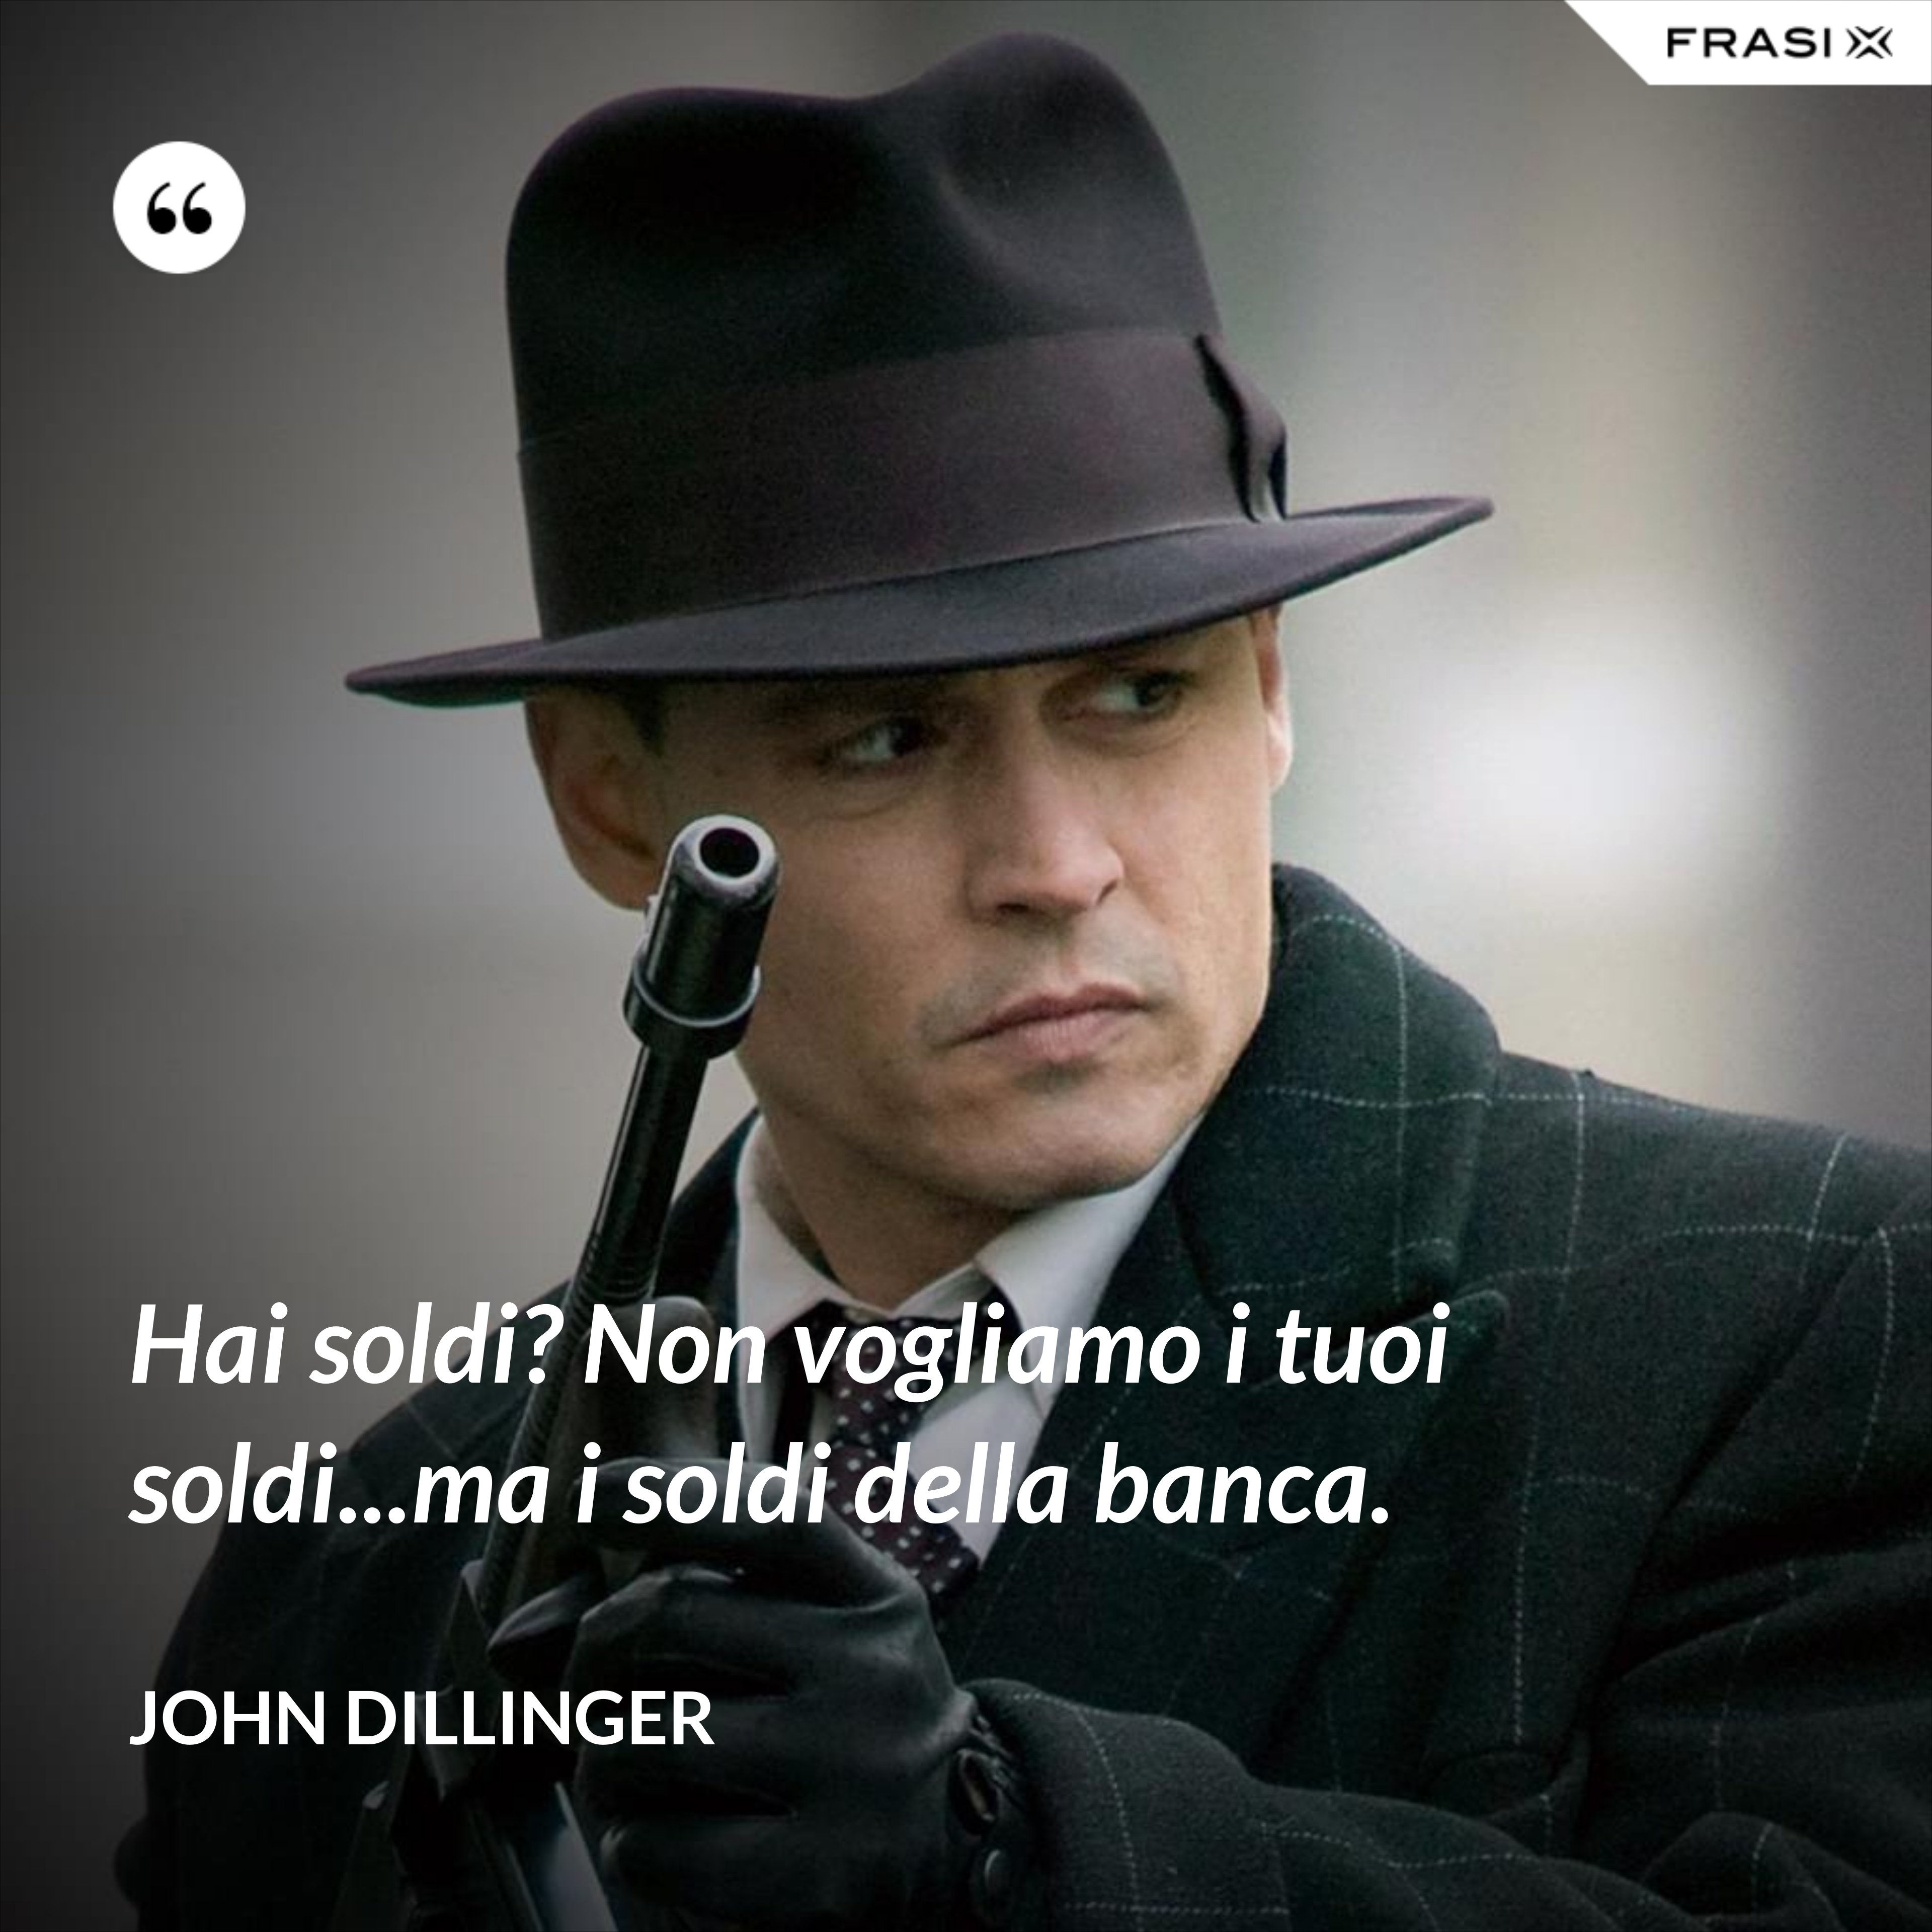 Hai soldi? Non vogliamo i tuoi soldi...ma i soldi della banca. - John Dillinger